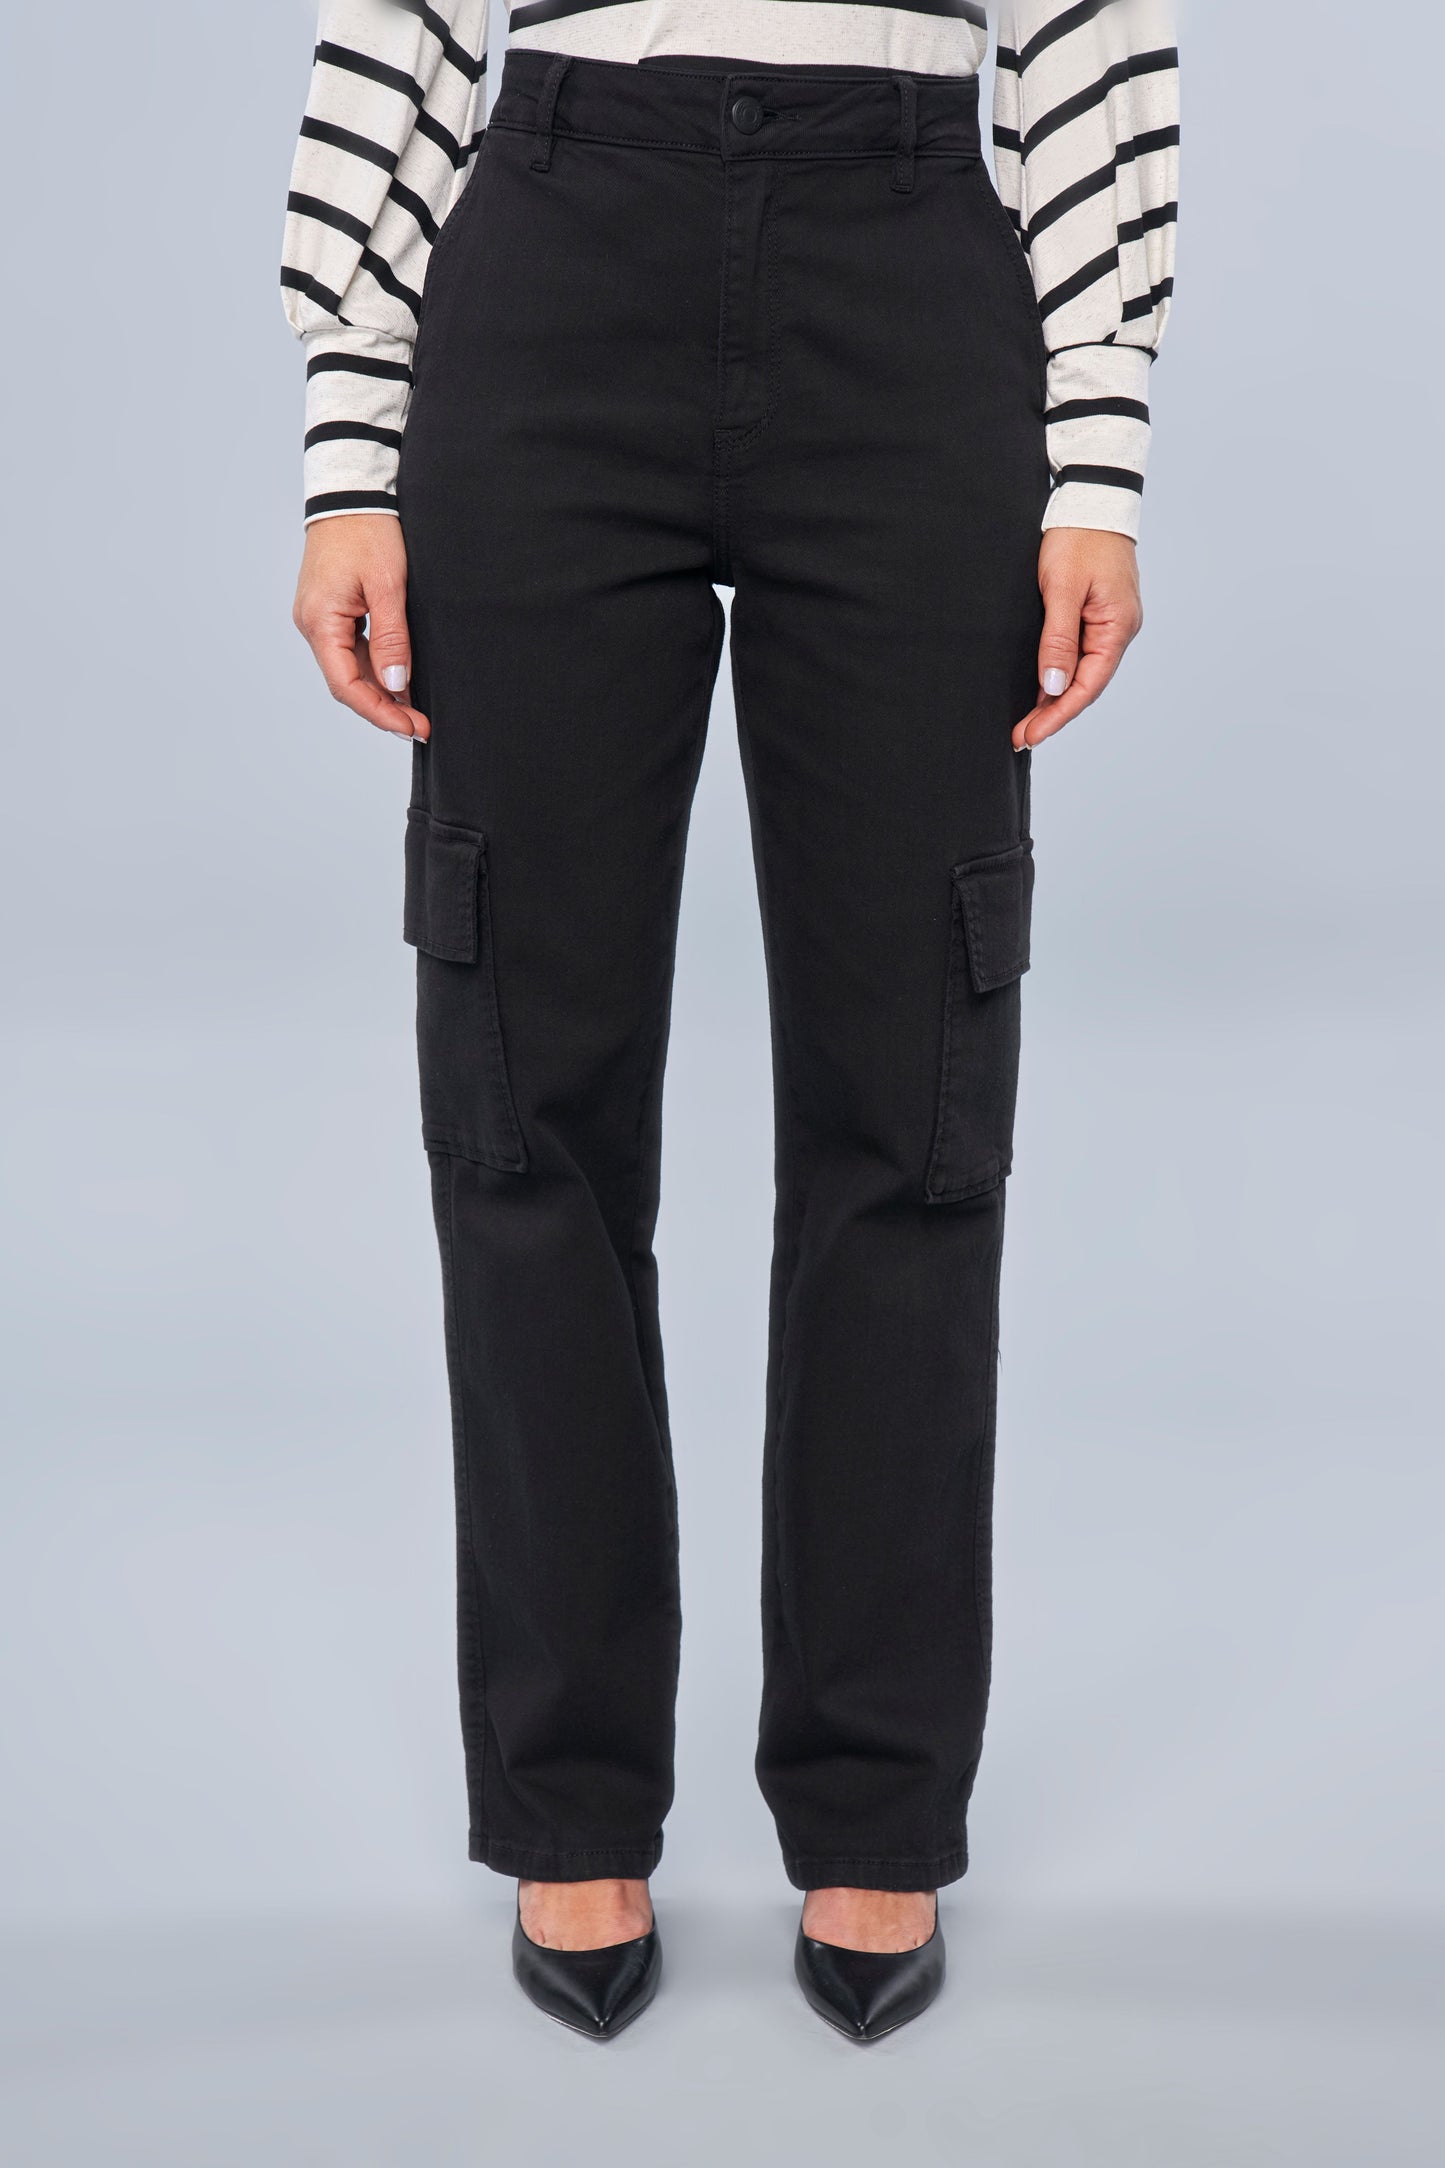 calça jeans black wide leg cintura intermediária com bolsos cargos